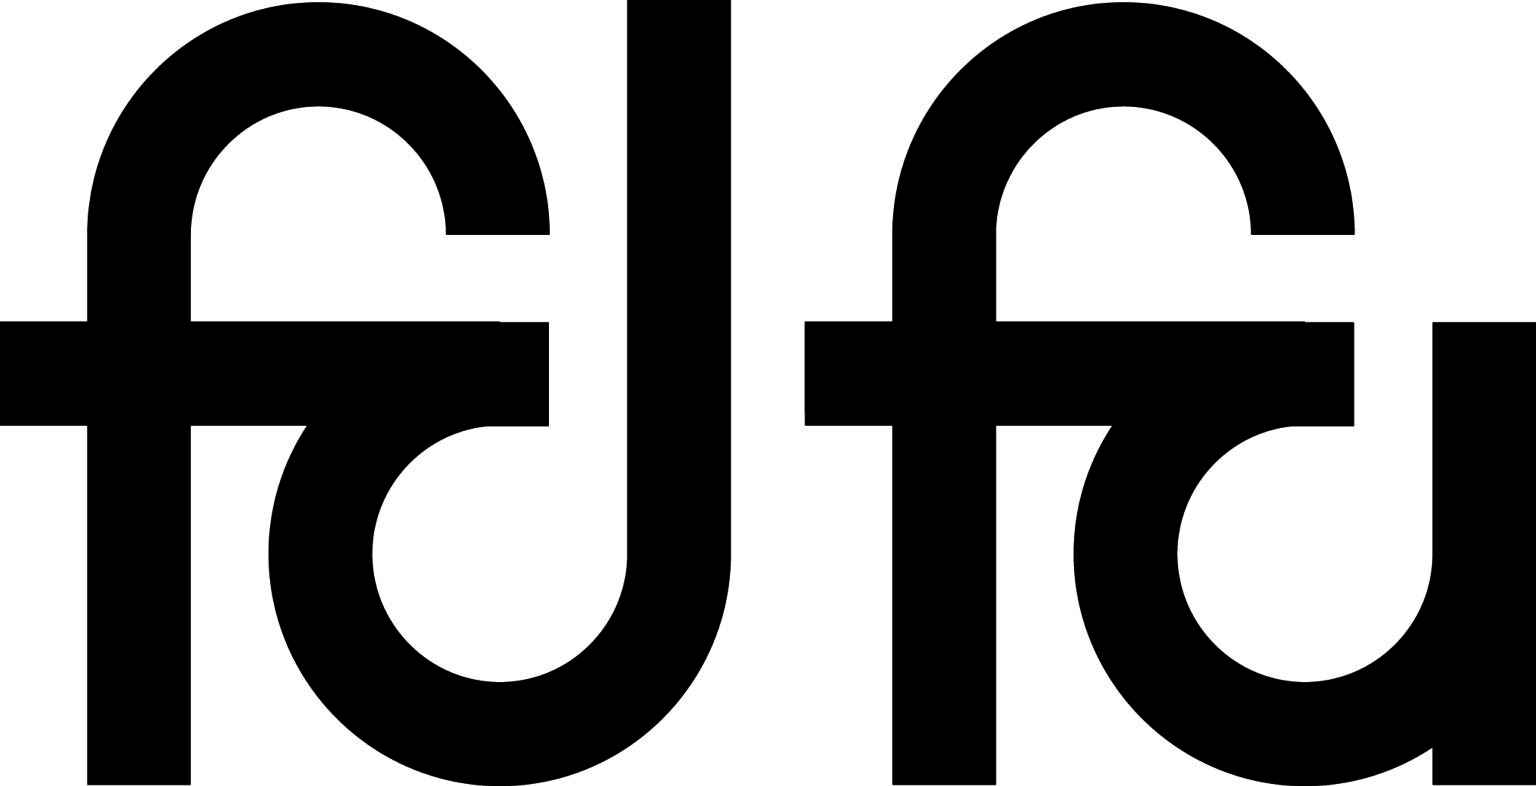 Stichting FDFA zoekt nieuwe algemeen directeur